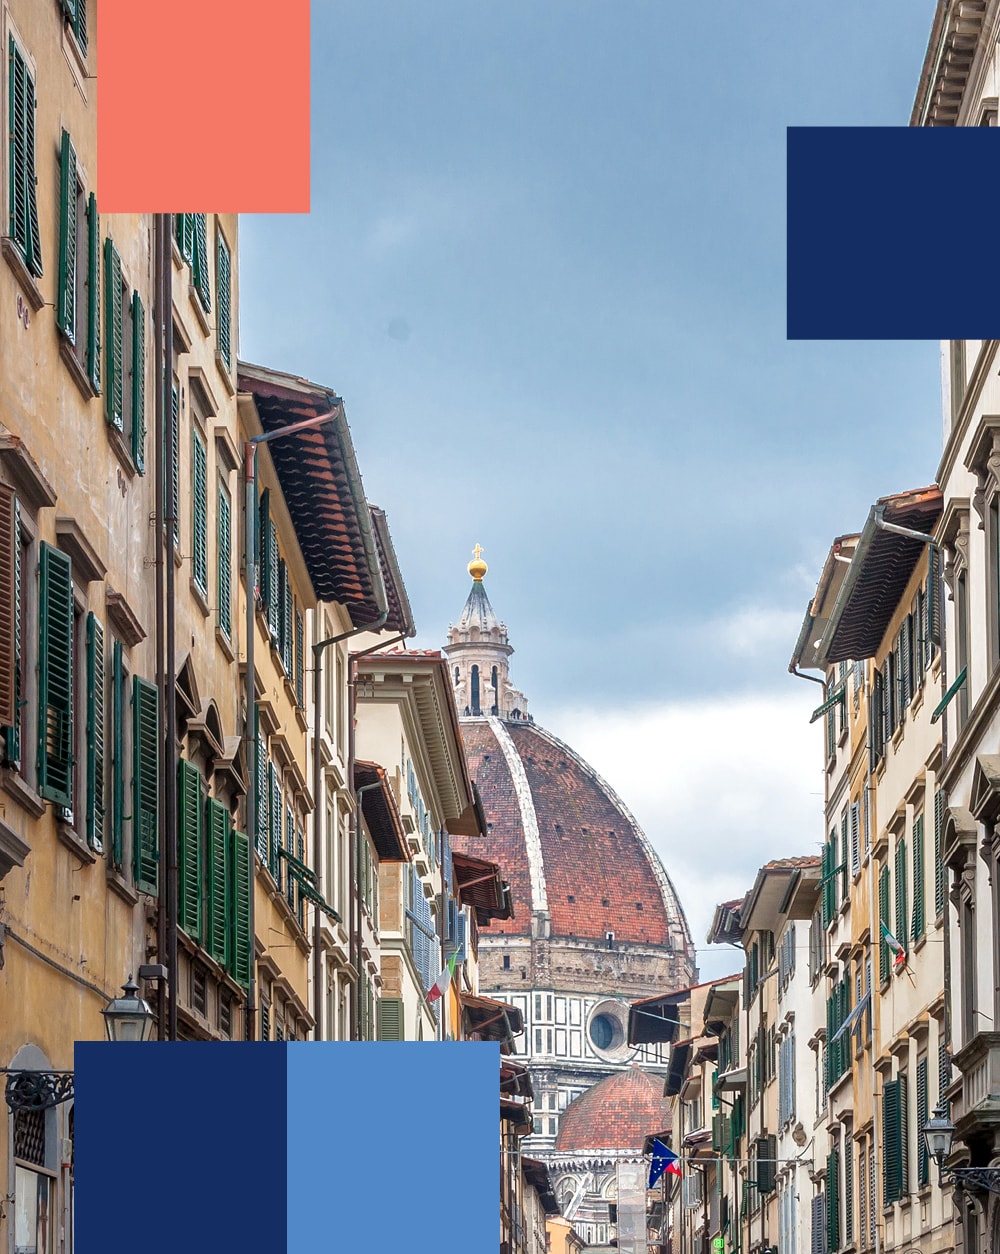 Vista da Cúpula de Brunelleschi de uma rua de Florença - mobile